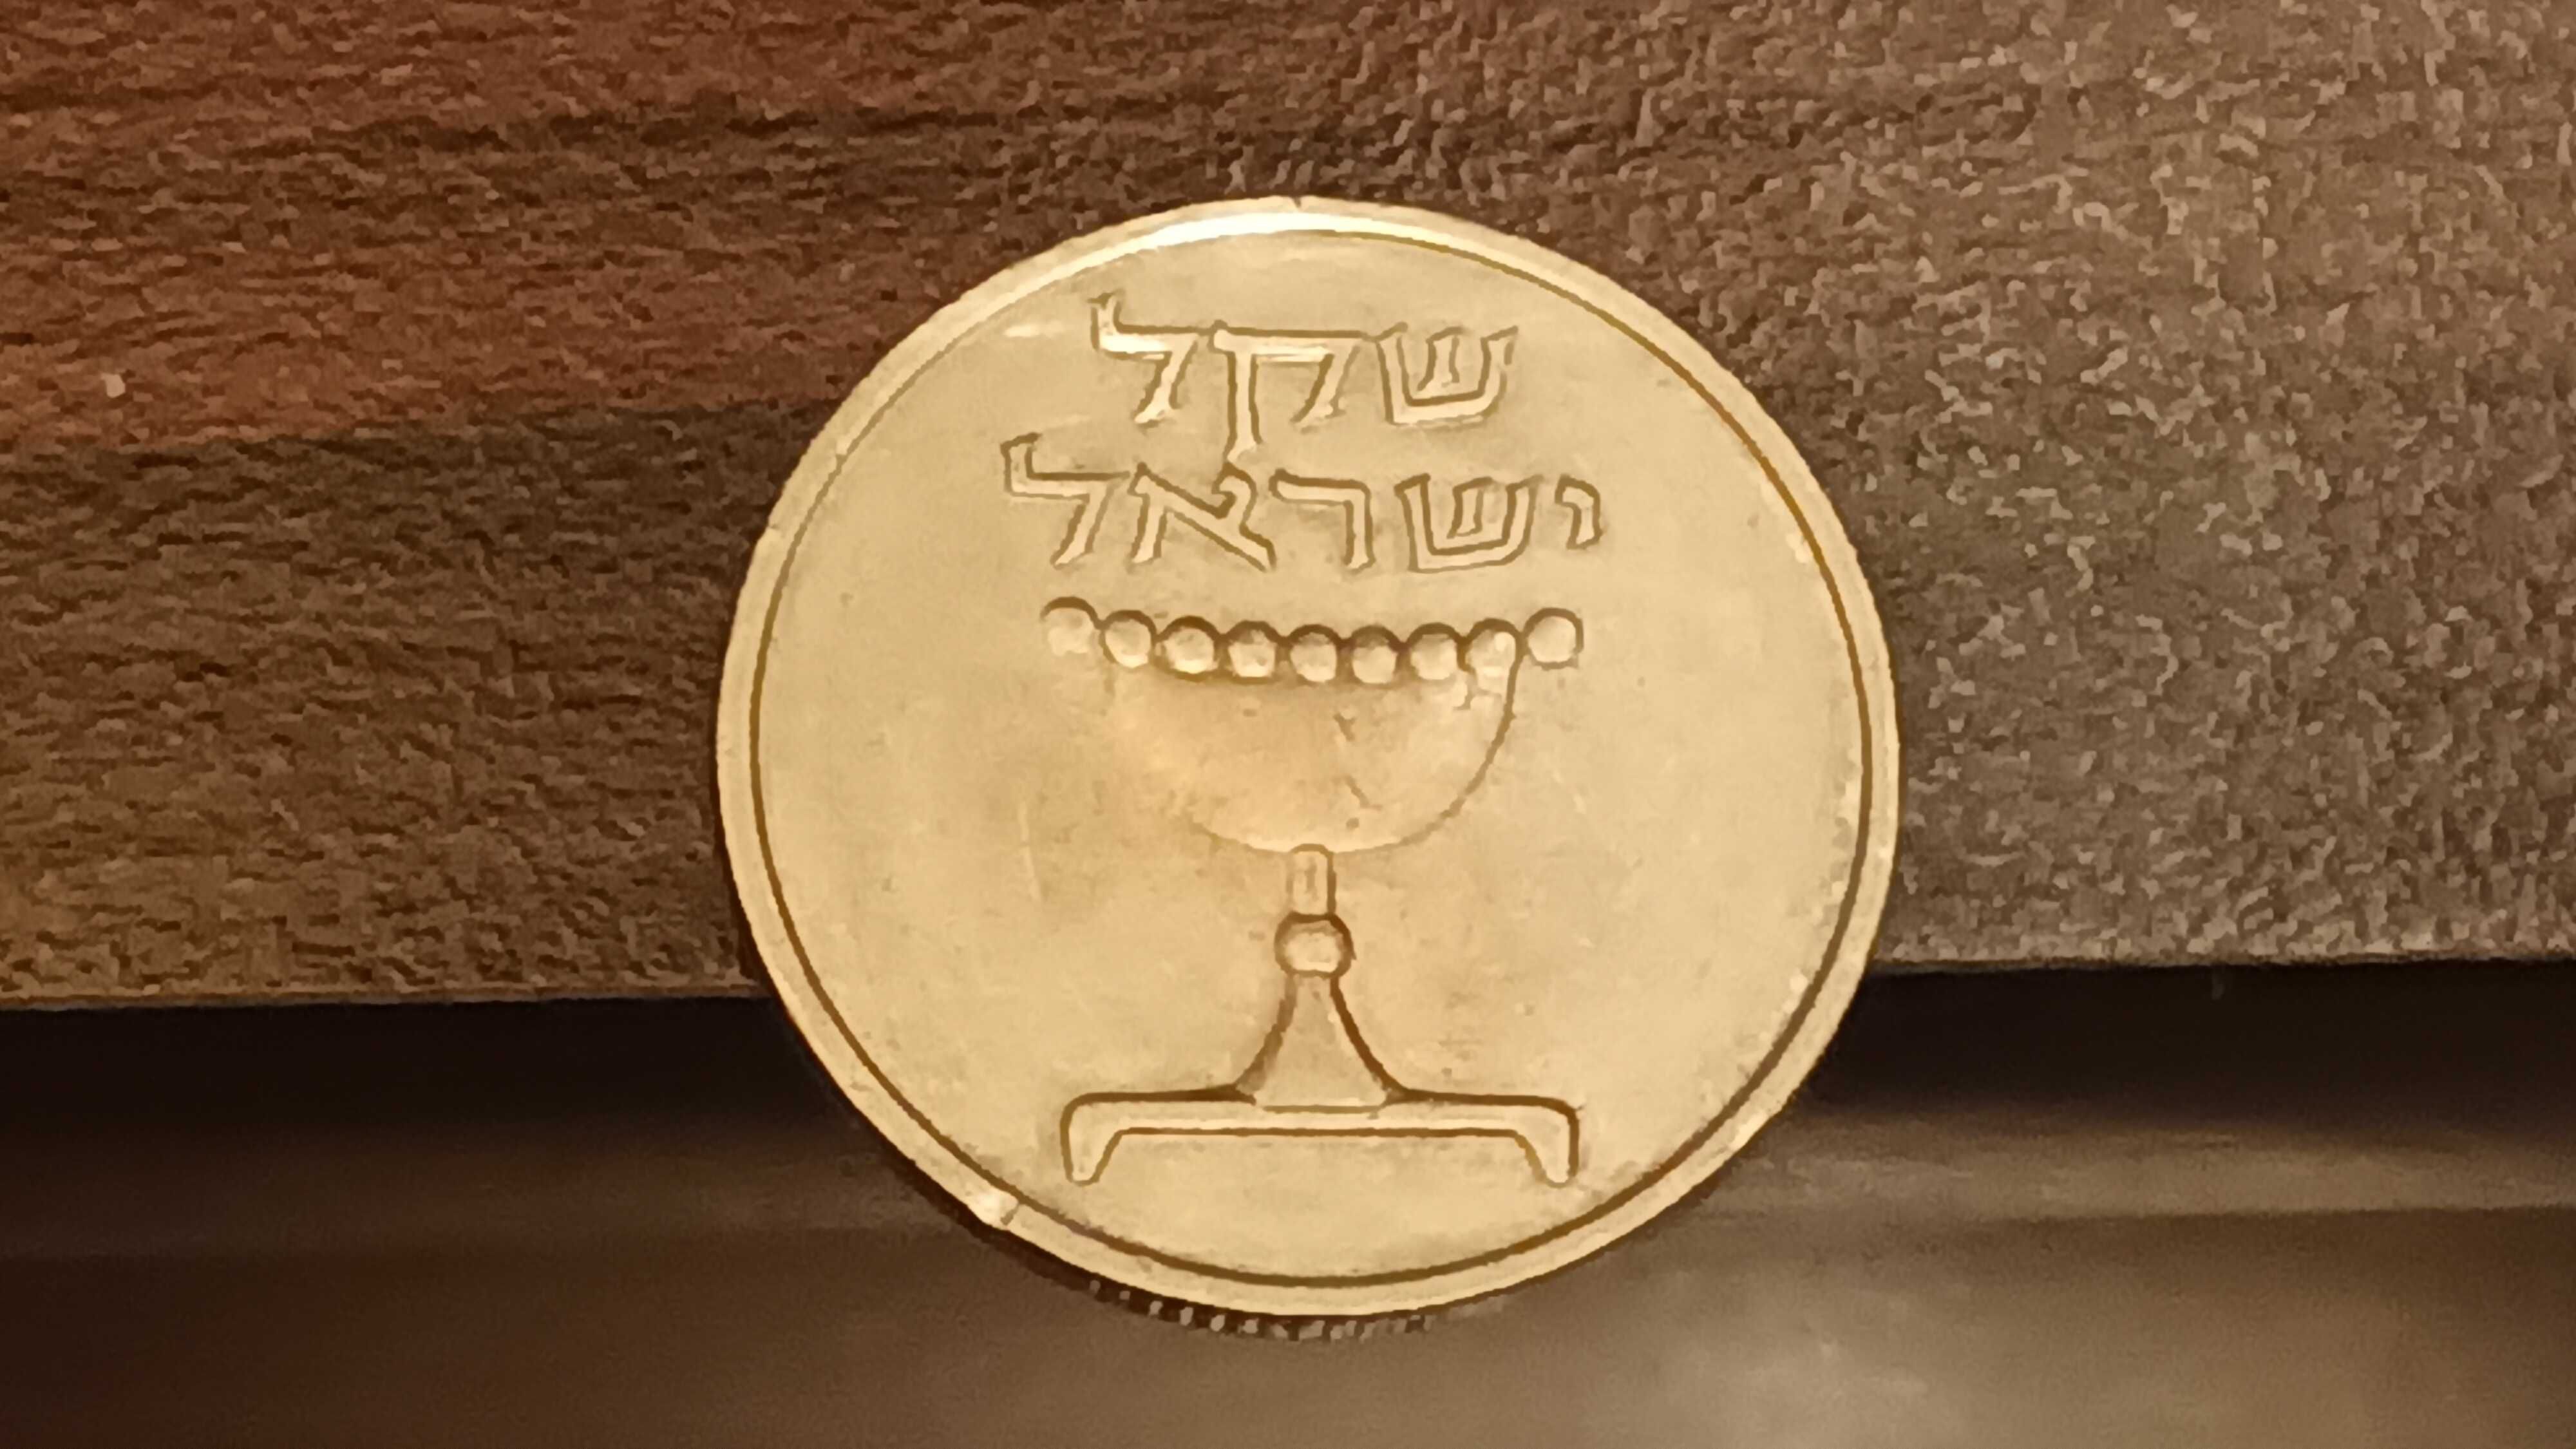 Moneta Izrael  1 szekel  z 1981 roku